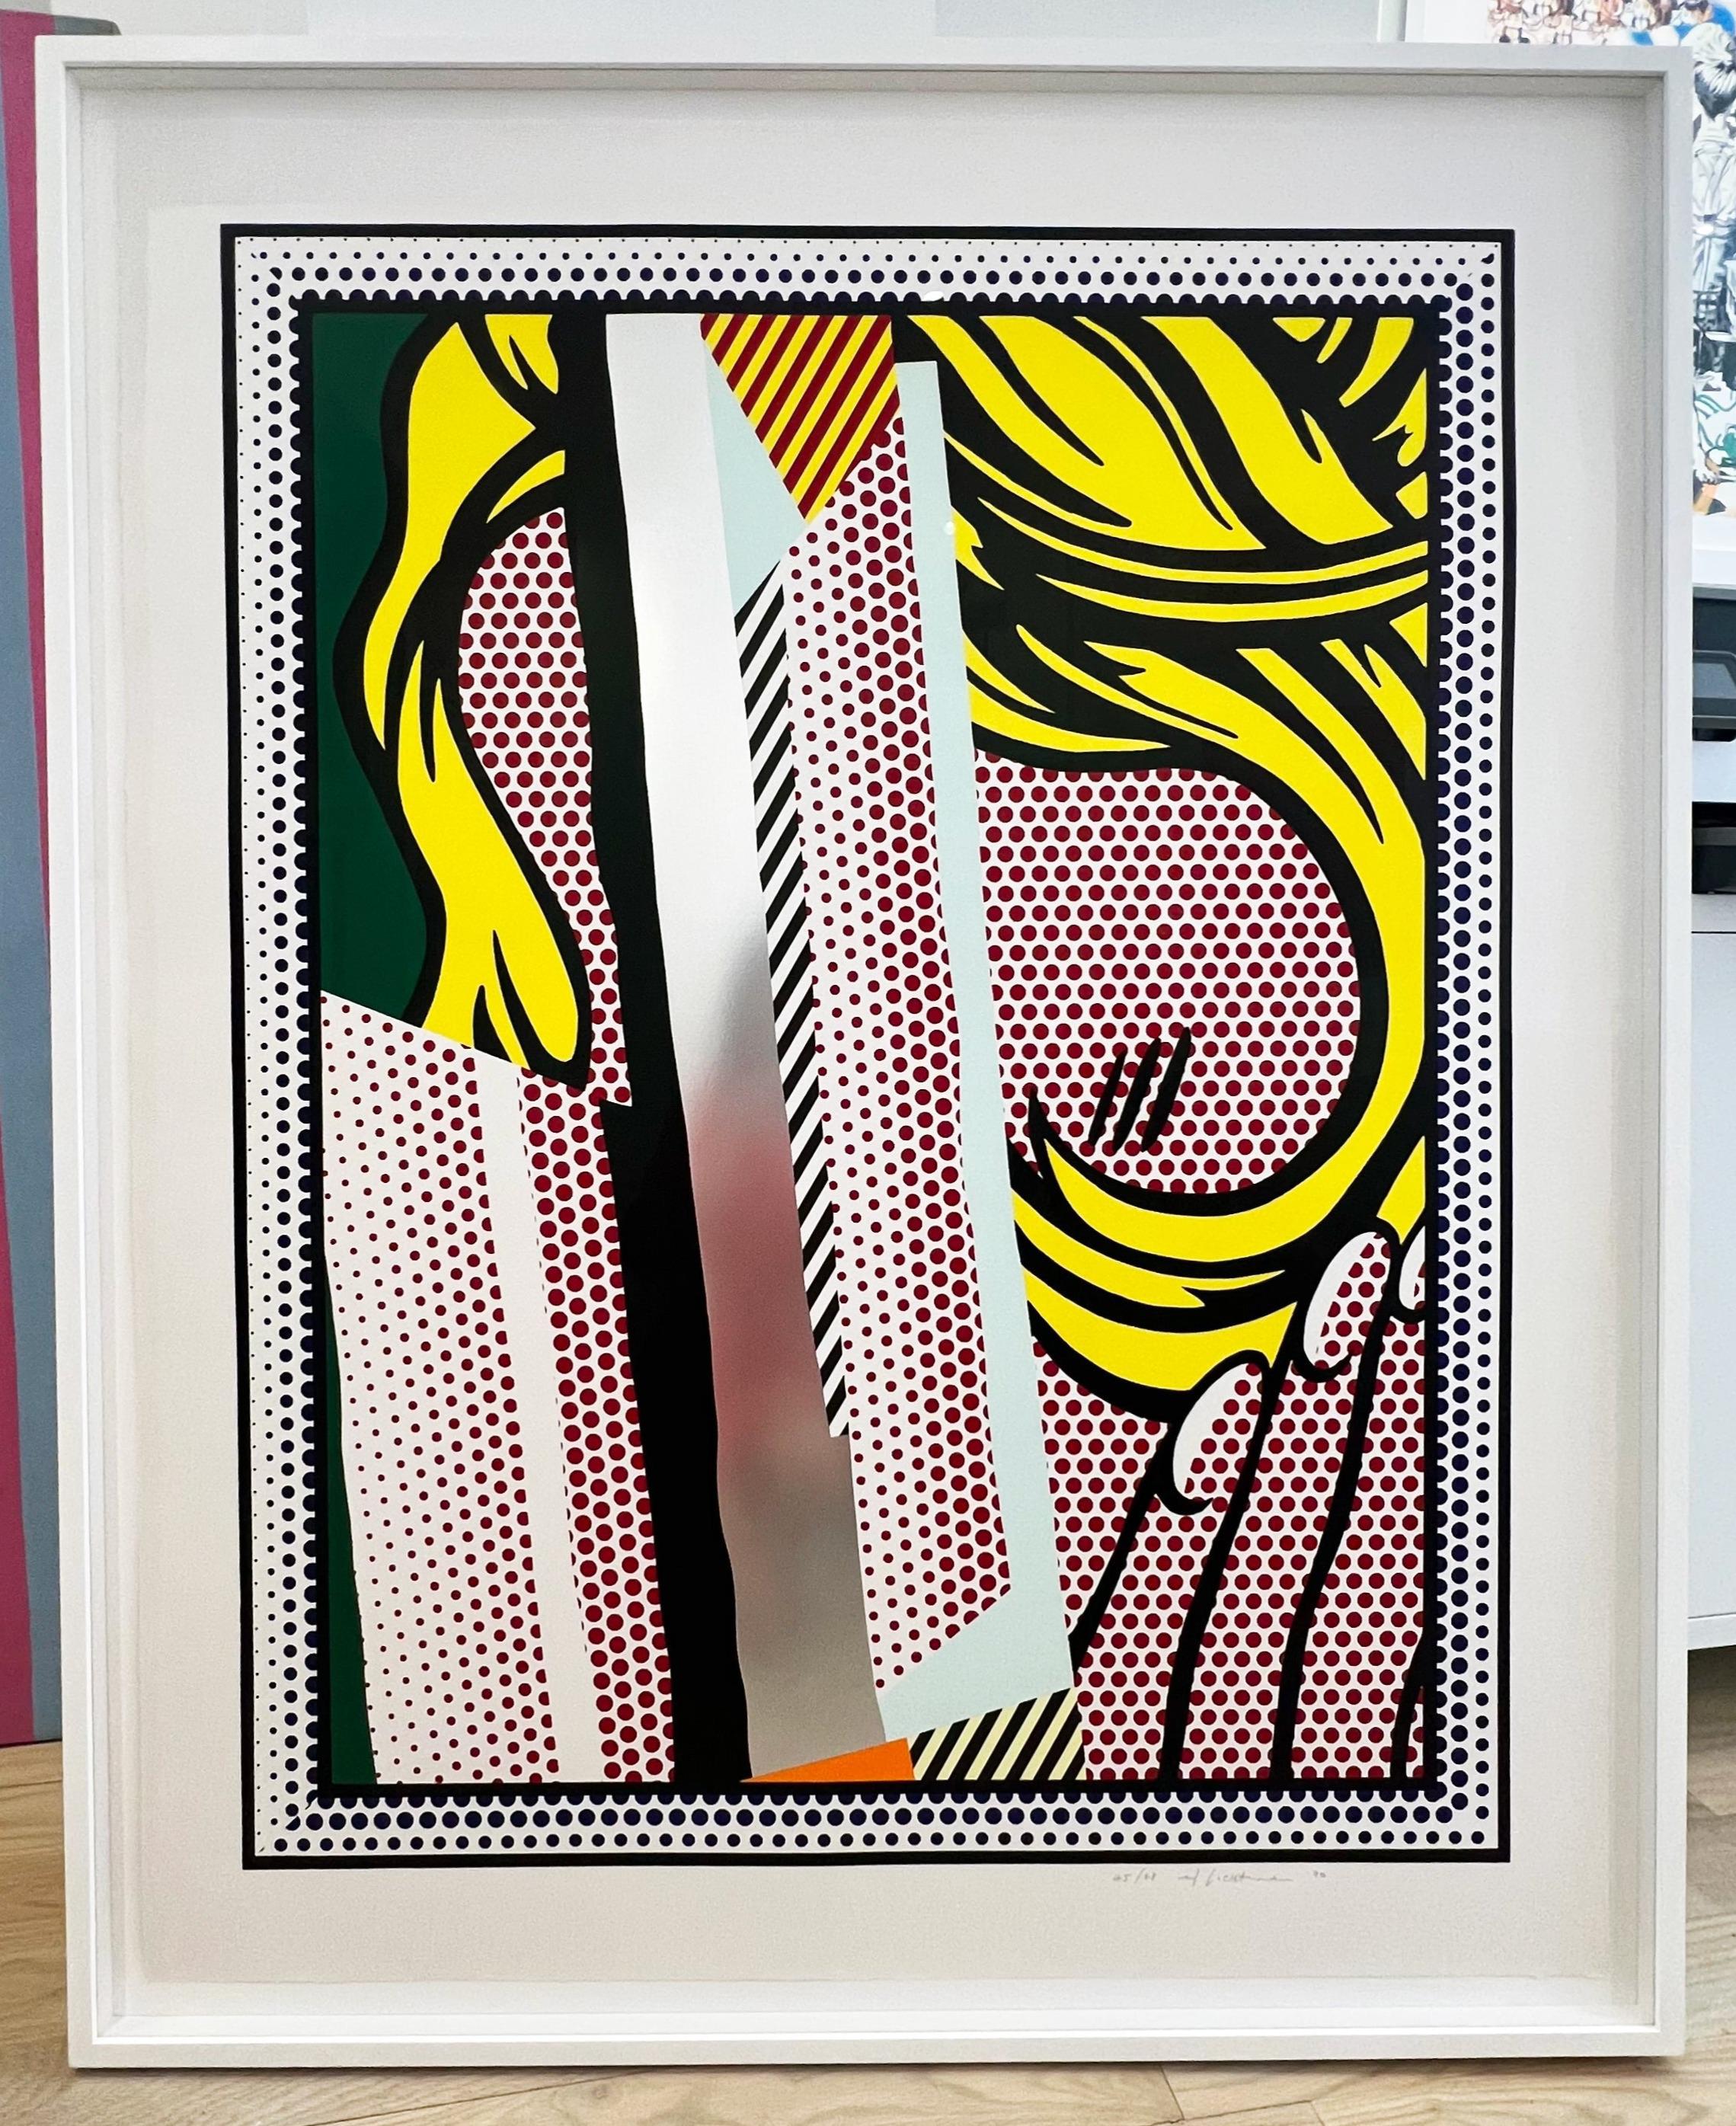 Reflections sur les cheveux - Print de Roy Lichtenstein